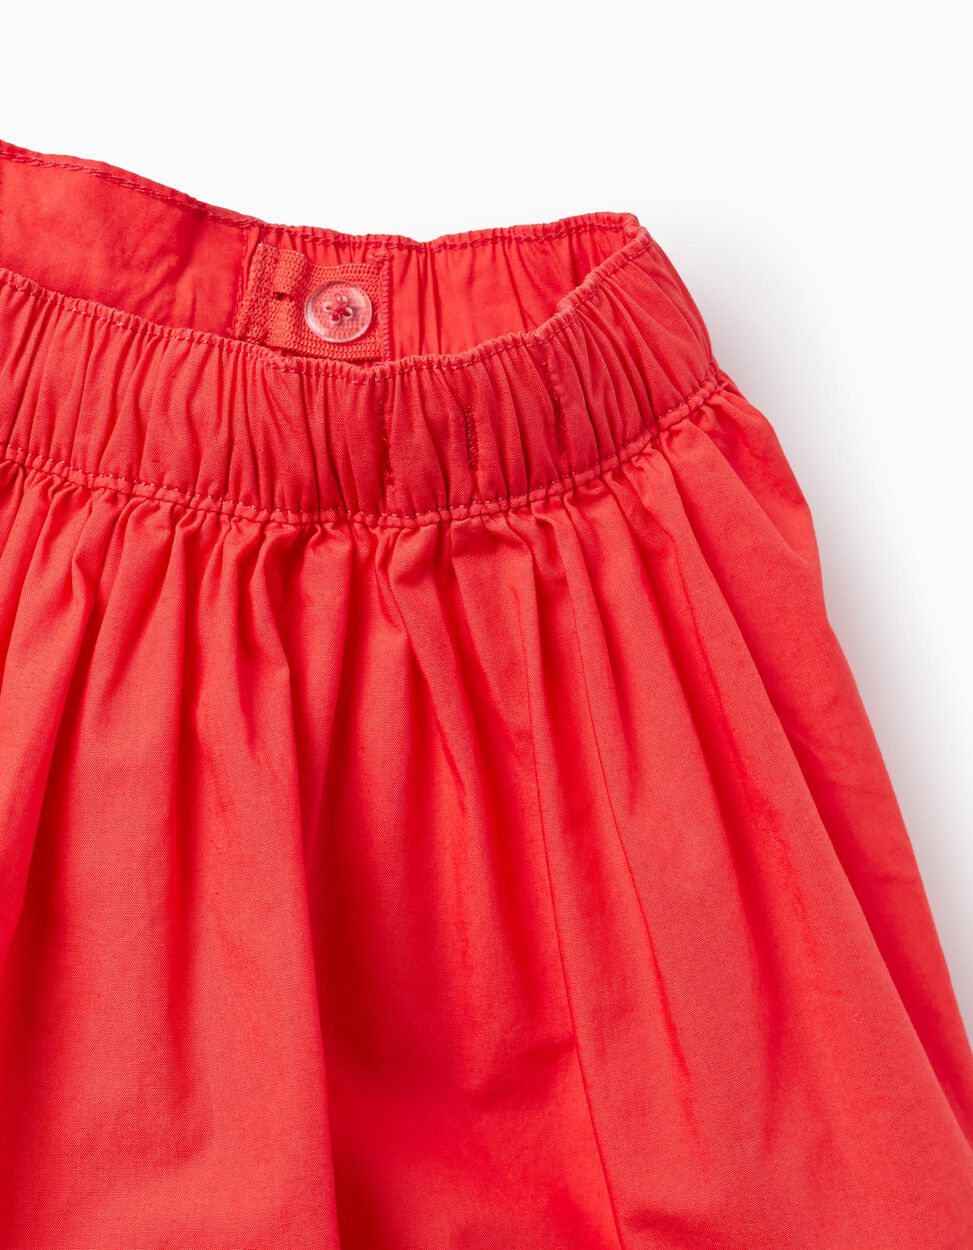 Buy Online Voluminous Cotton Skirt for Girls, Red